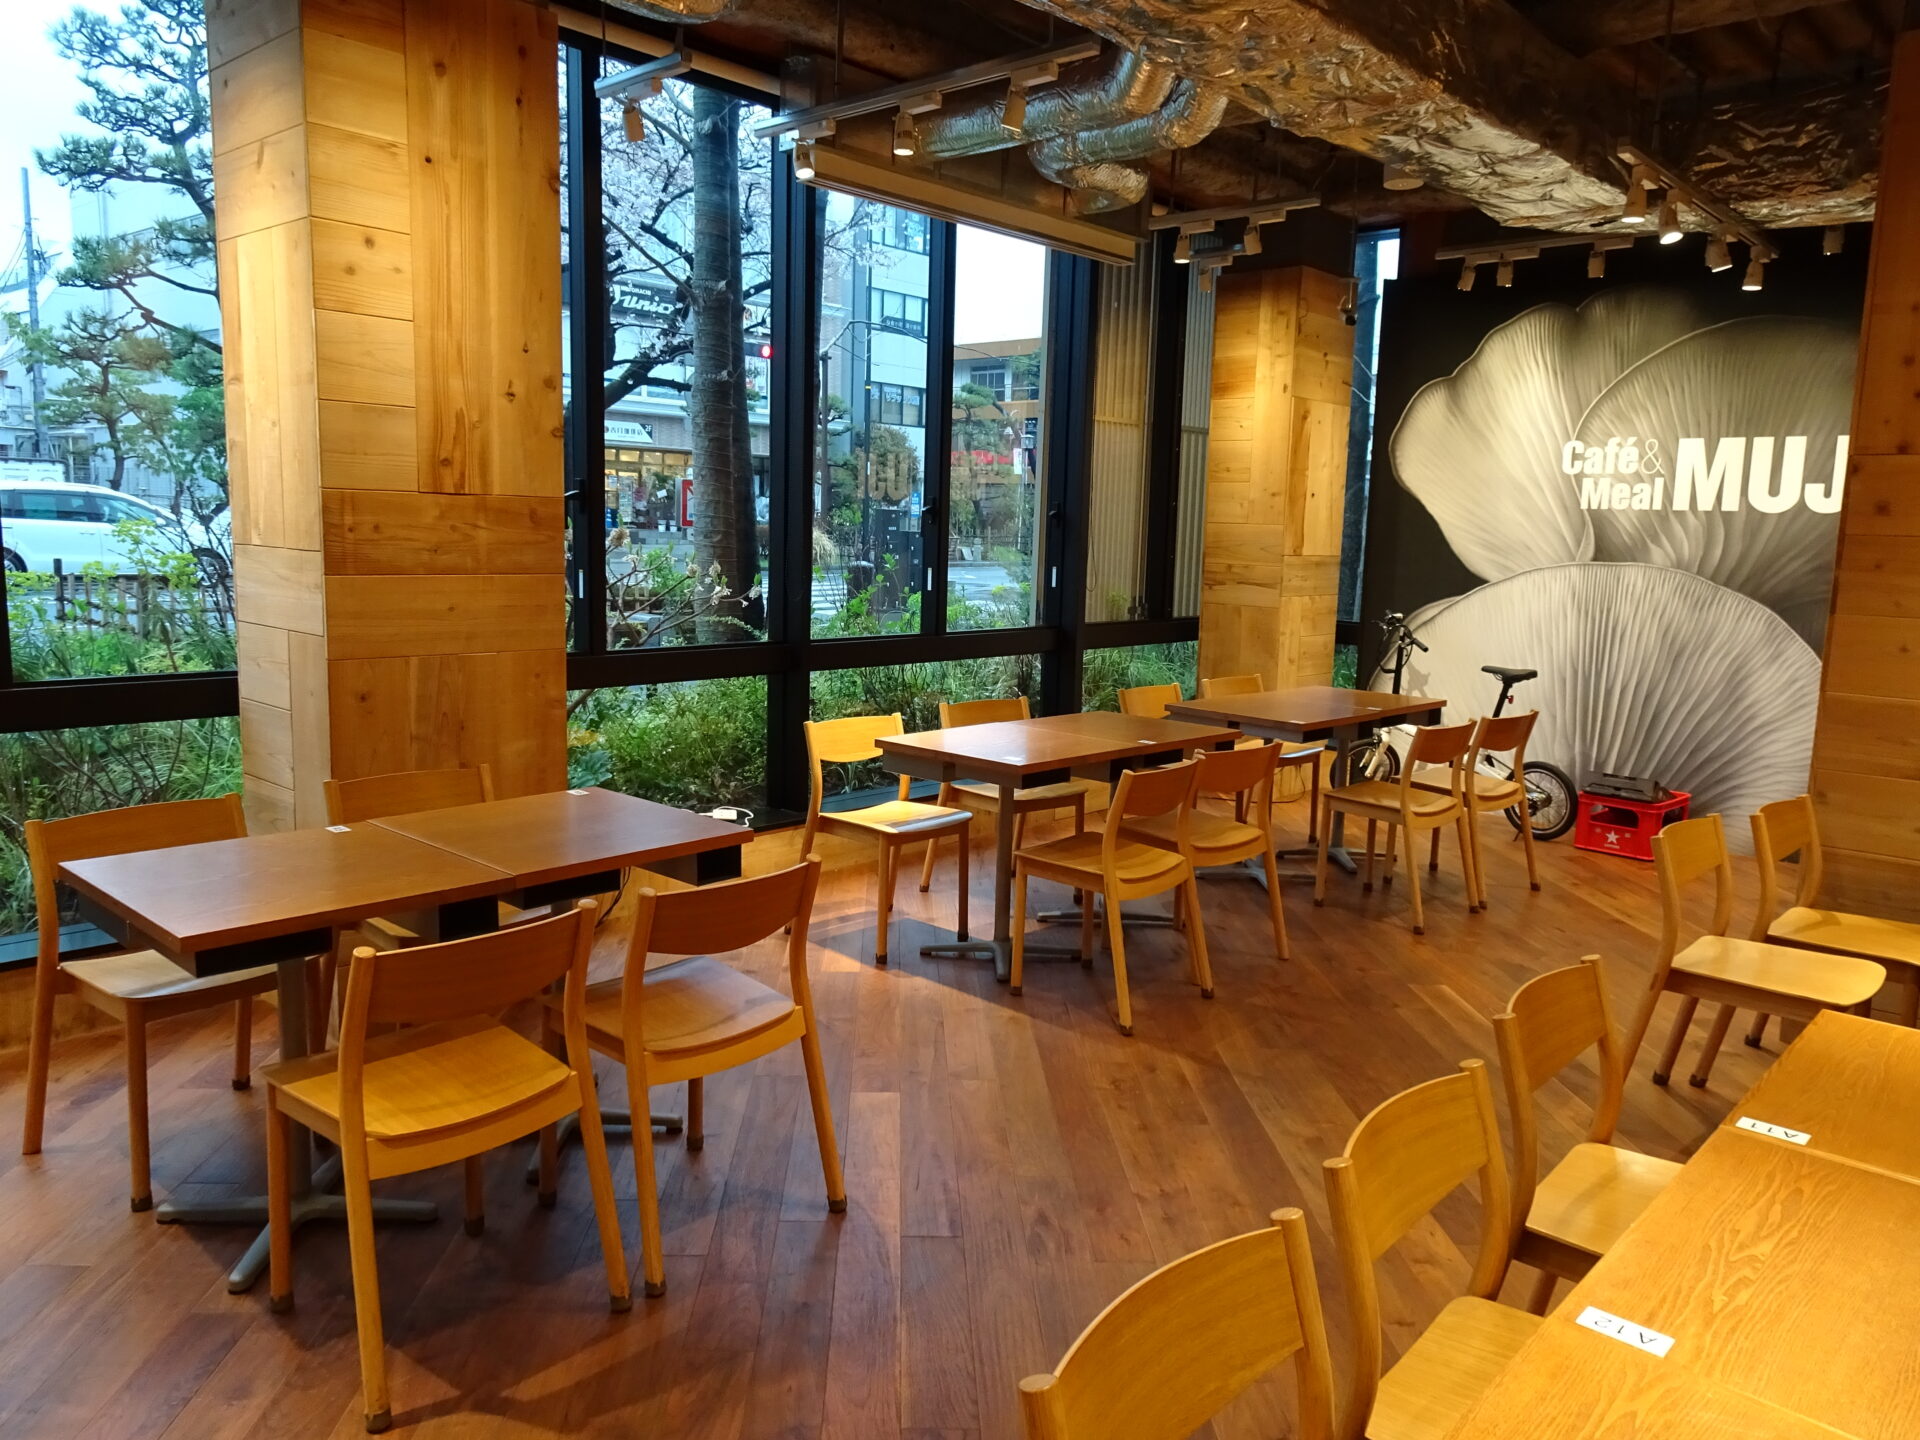 ホテルメトロポリタン鎌倉、ホテル１階「Café&Meal MUJI」朝食、店内